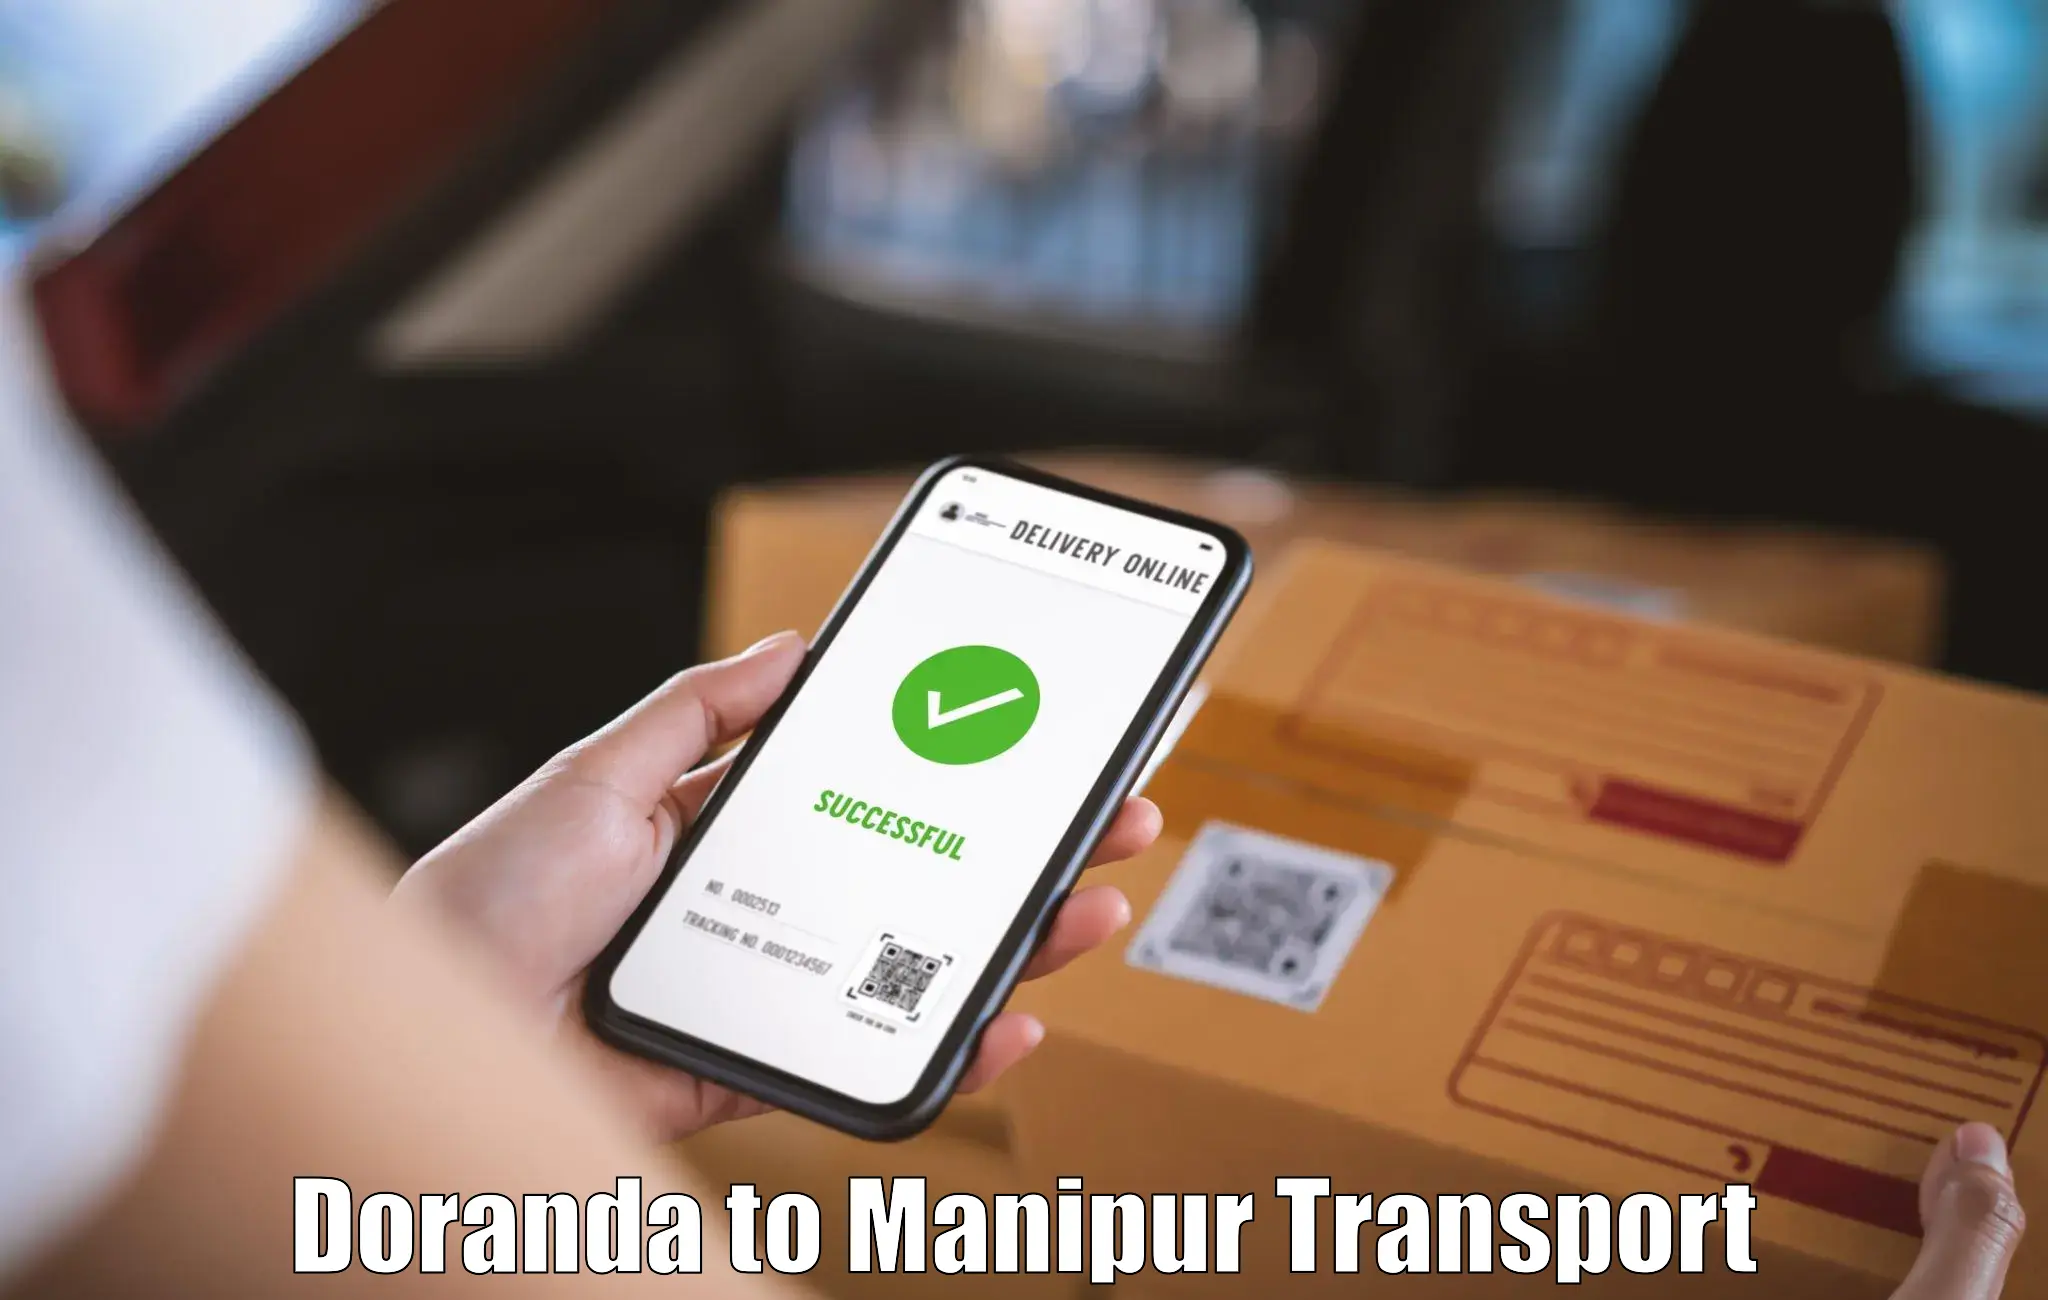 Air cargo transport services Doranda to Manipur